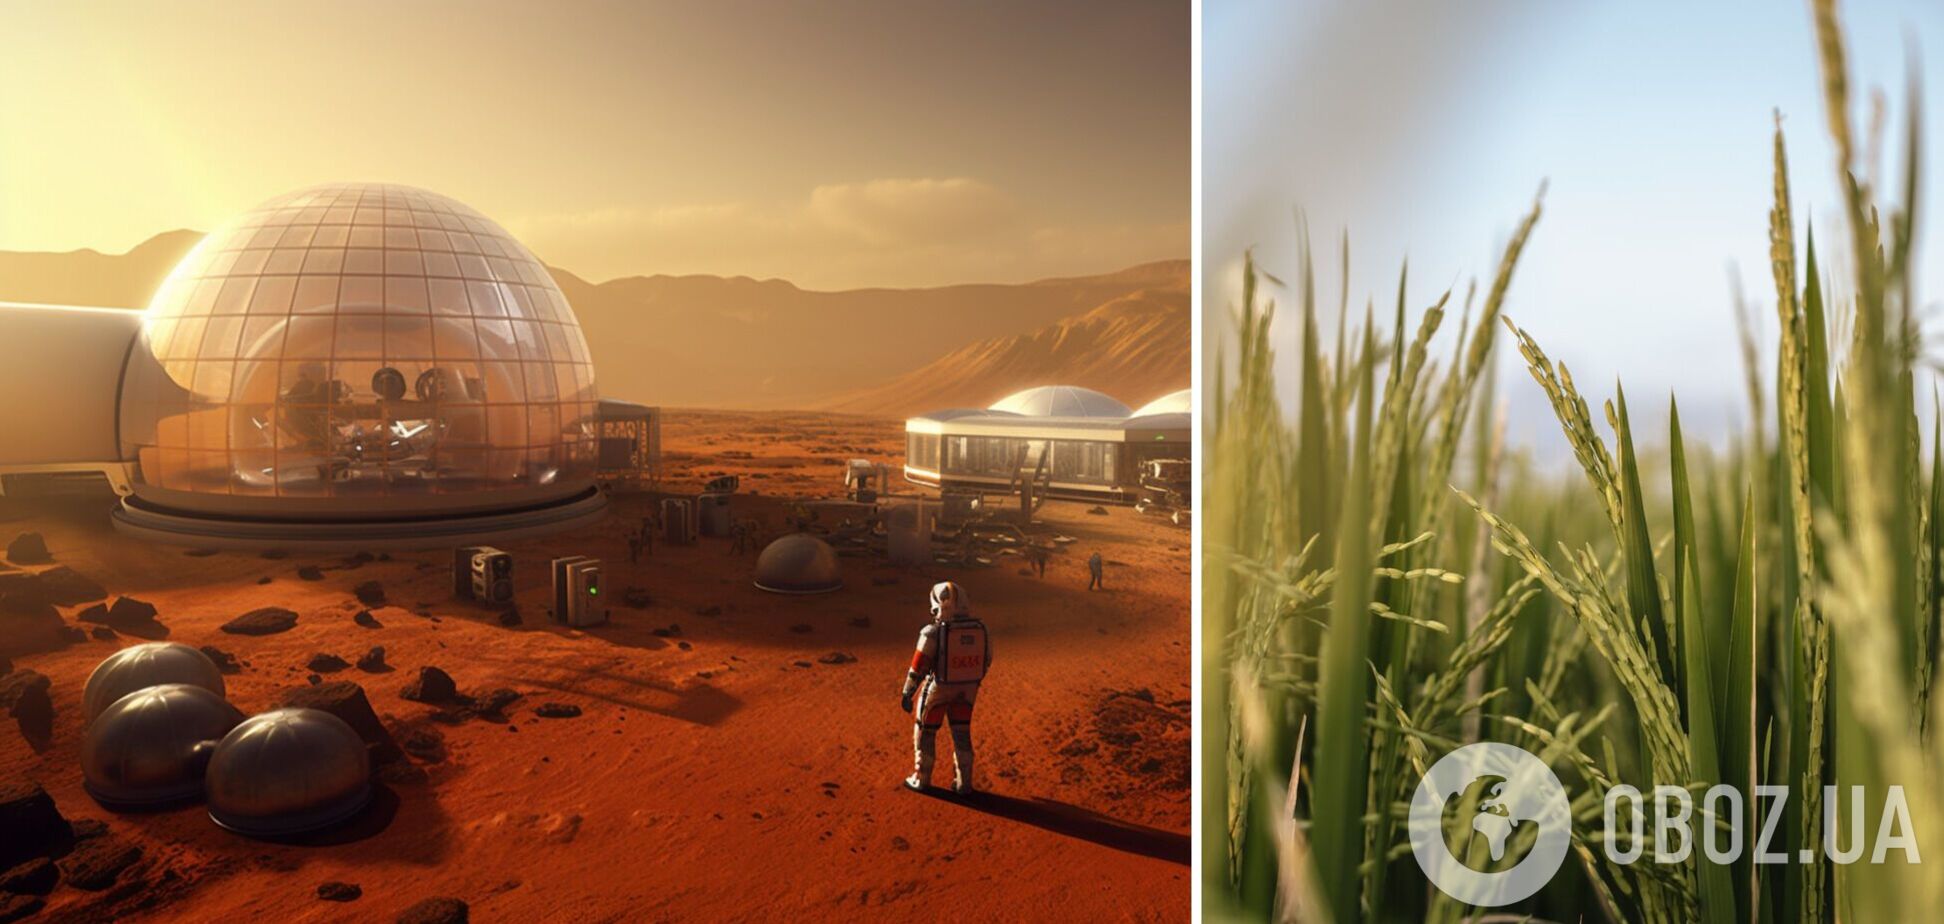 Не только картошка: обнаружено растение, которое люди смогут выращивать на Марсе